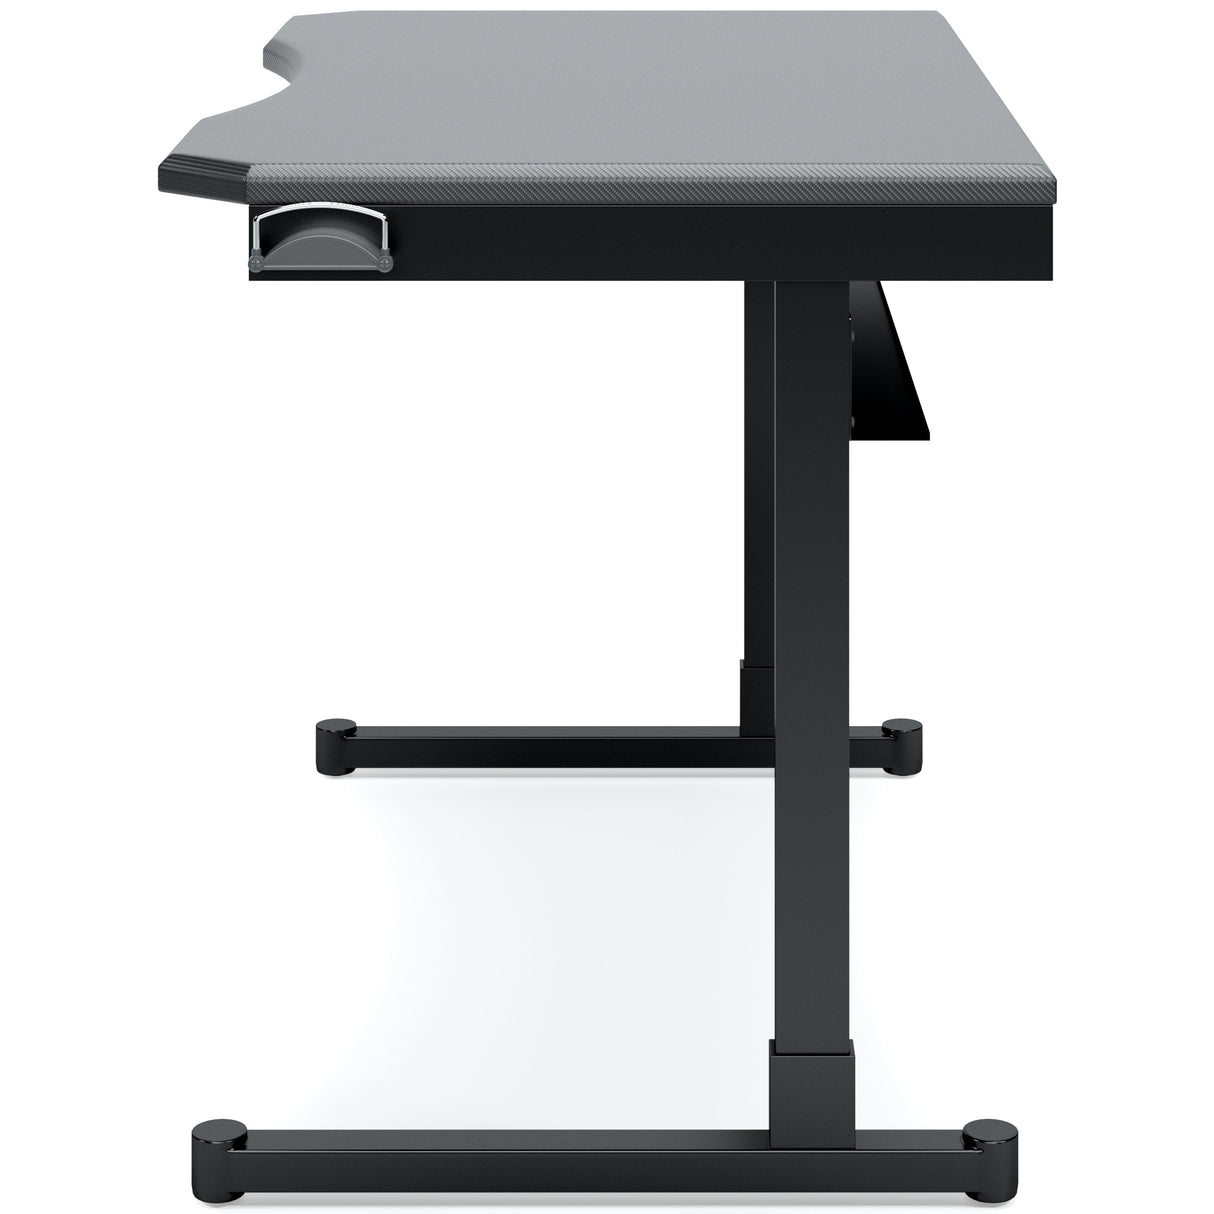 Lynxtyn - Black - Home Office Desk